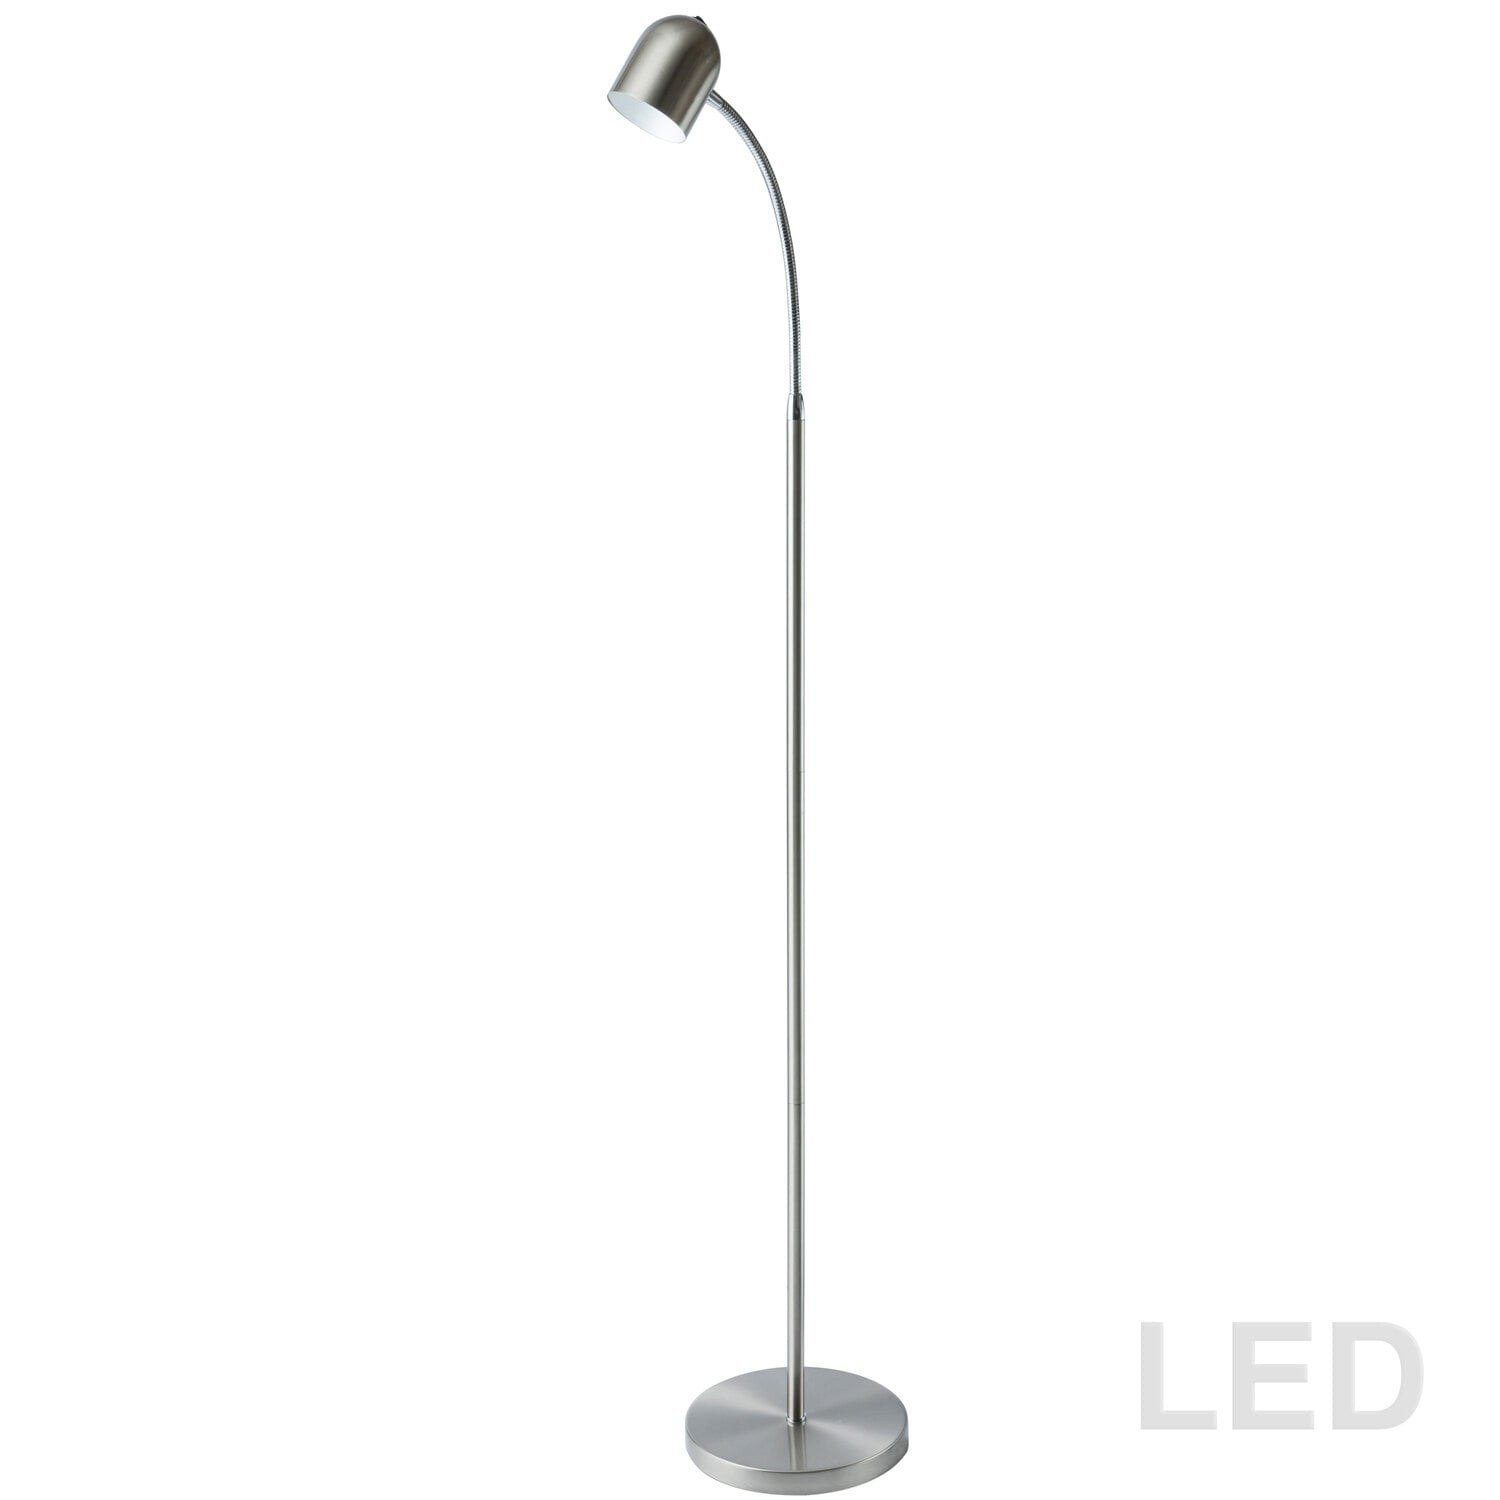 123ledf-sc 5 Watt Led Floor Lamp, Satin Chrome